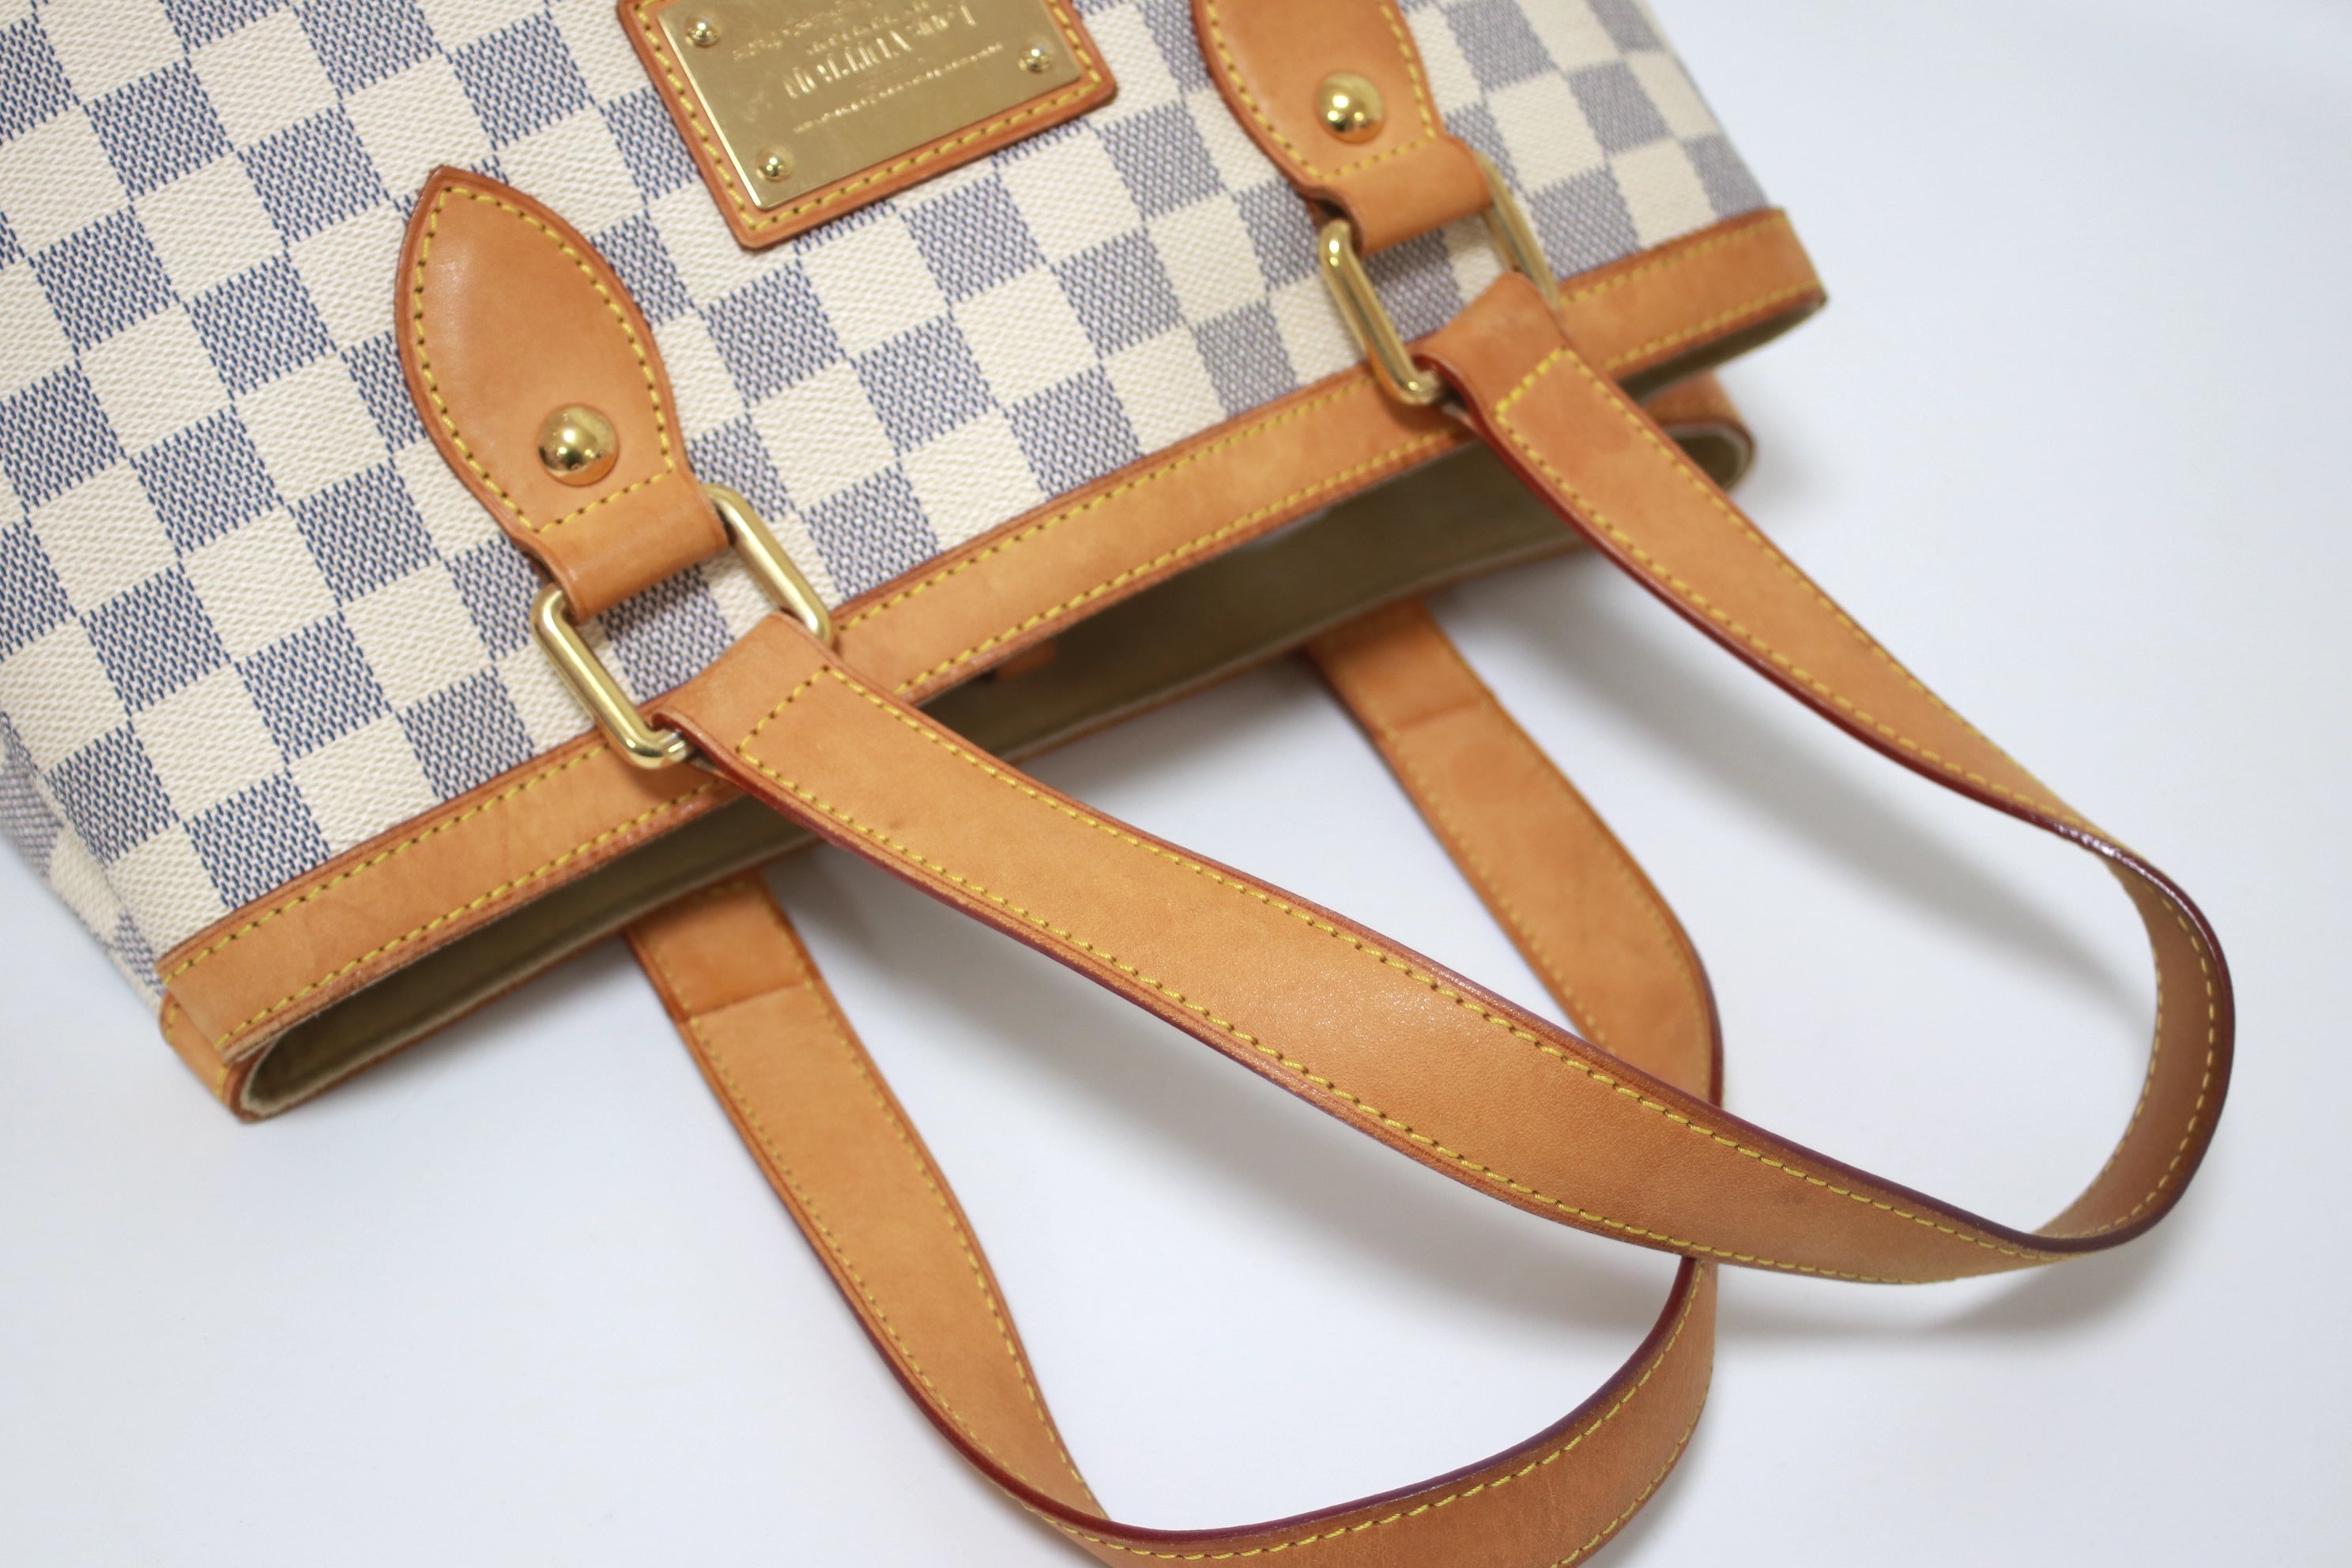 Louis Vuitton Hampstead PM Damier Azur Shoulder Bag Used (7888)